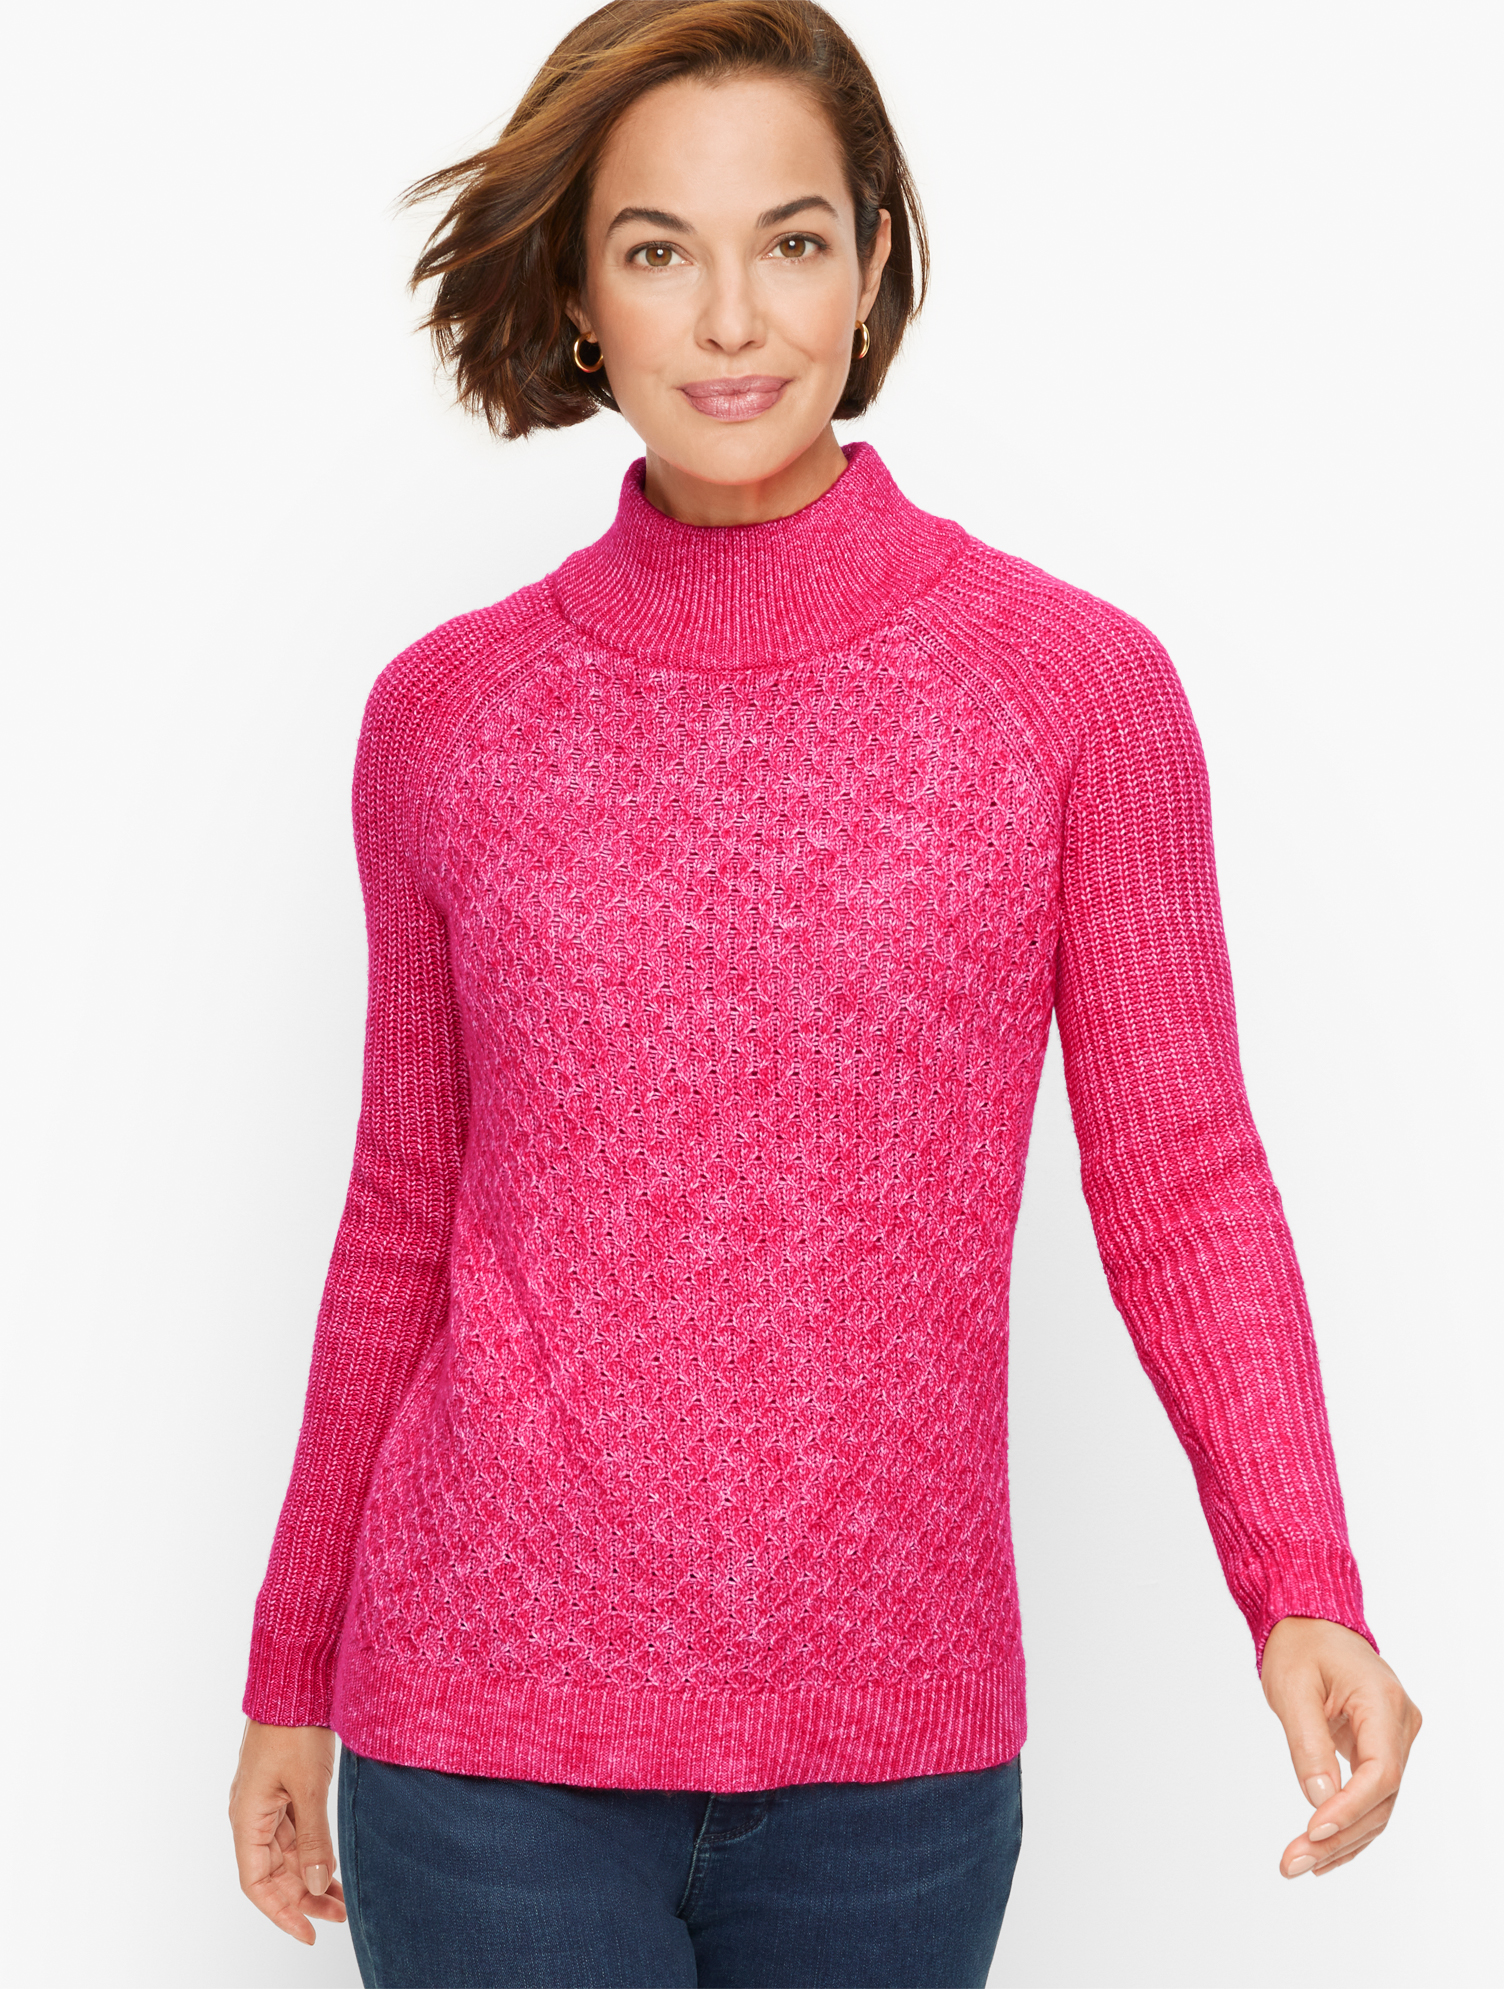 Talbots Textured Stitch Sweater - Pink Punch - 1x